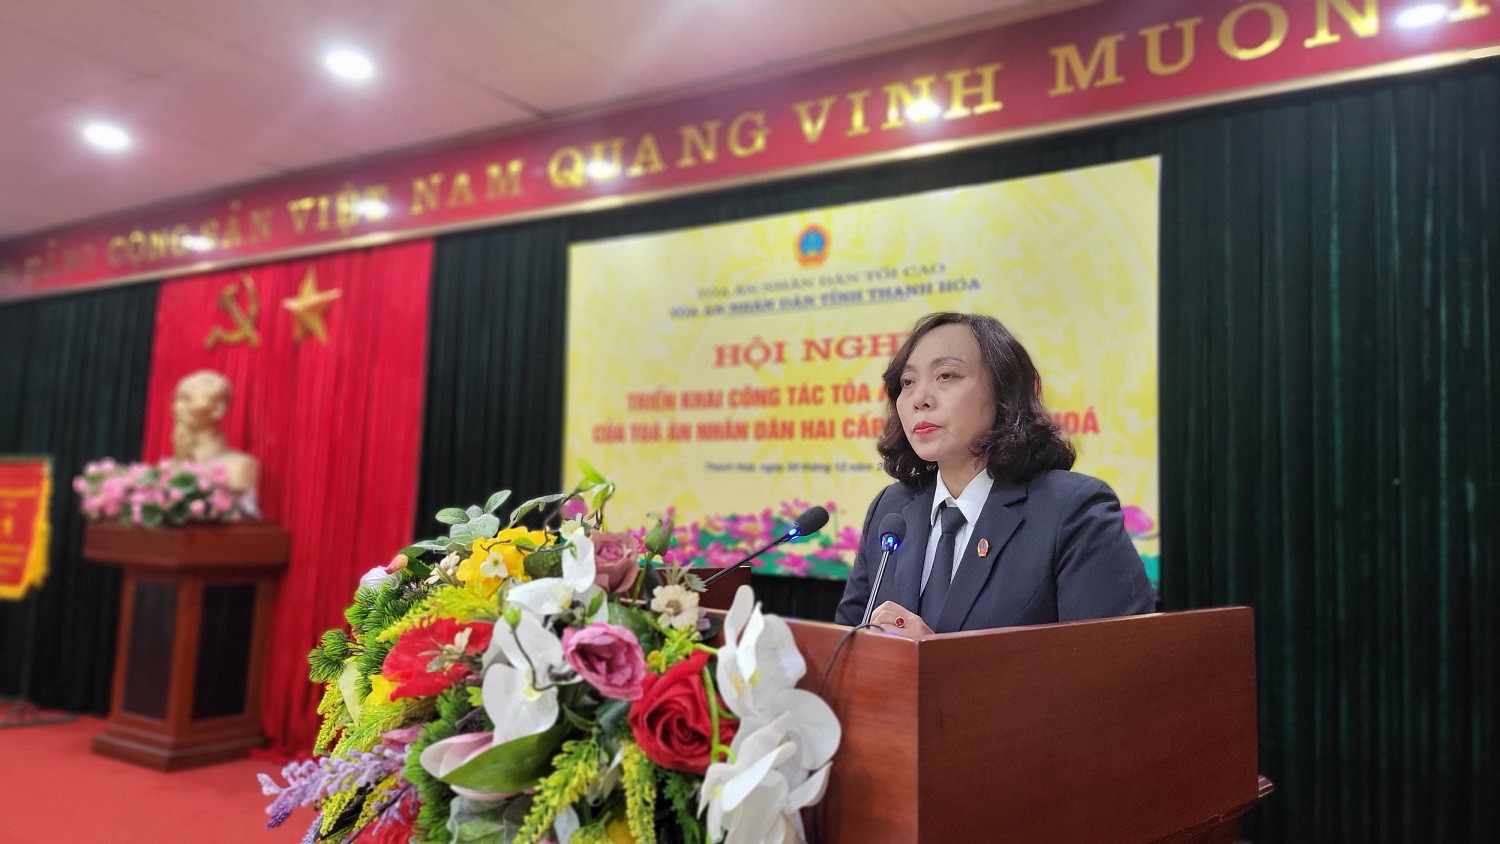 Đồng chí Nguyễn Thị Nga, Chánh án TAND tỉnh Thanh Hóa phát biểu tại Hội Nghị